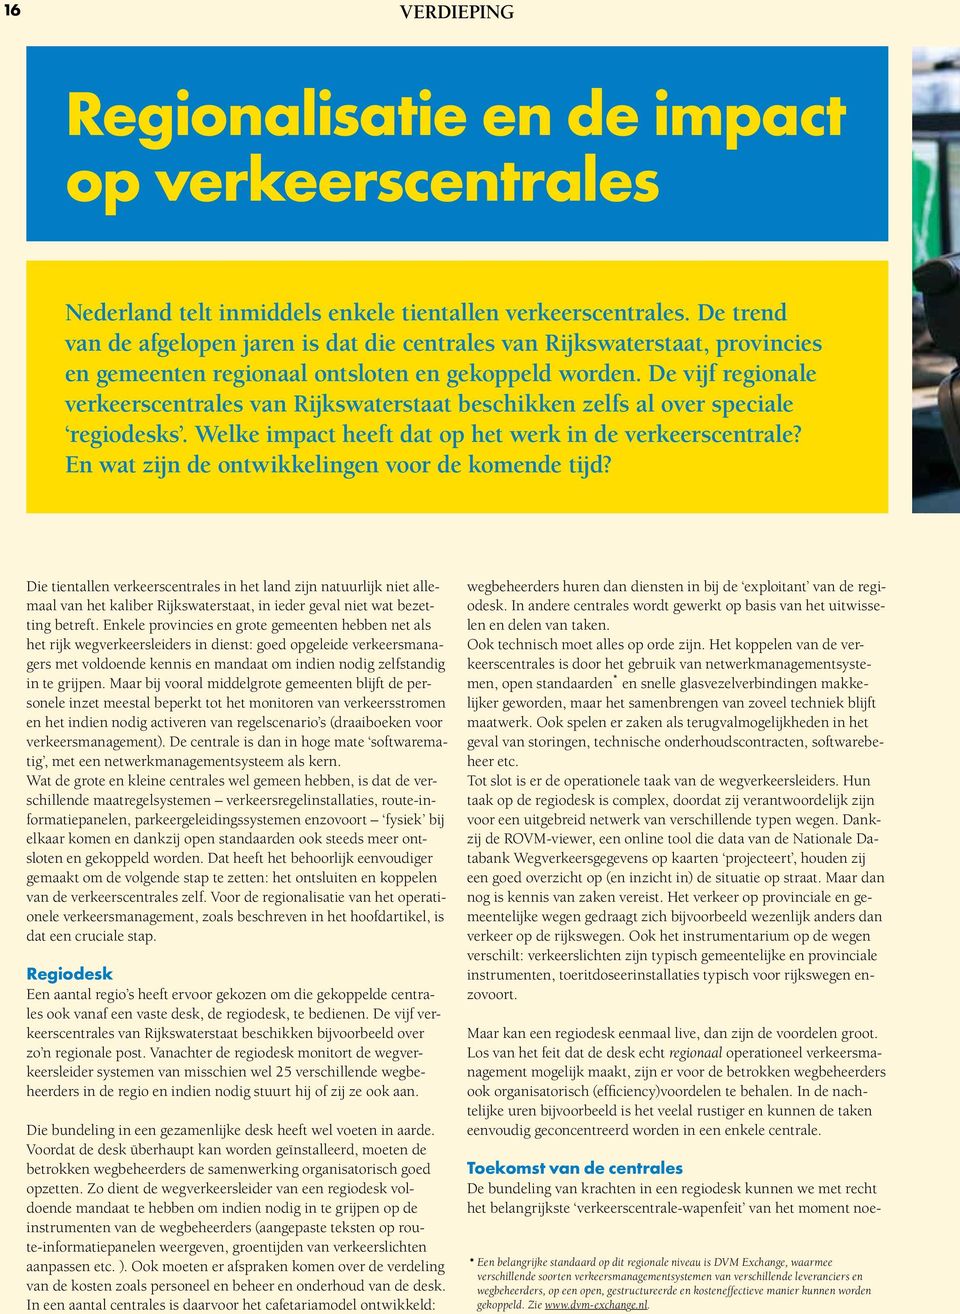 De vijf regionale verkeerscentrales van Rijkswaterstaat beschikken zelfs al over speciale regiodesks. Welke impact heeft dat op het werk in de verkeerscentrale?